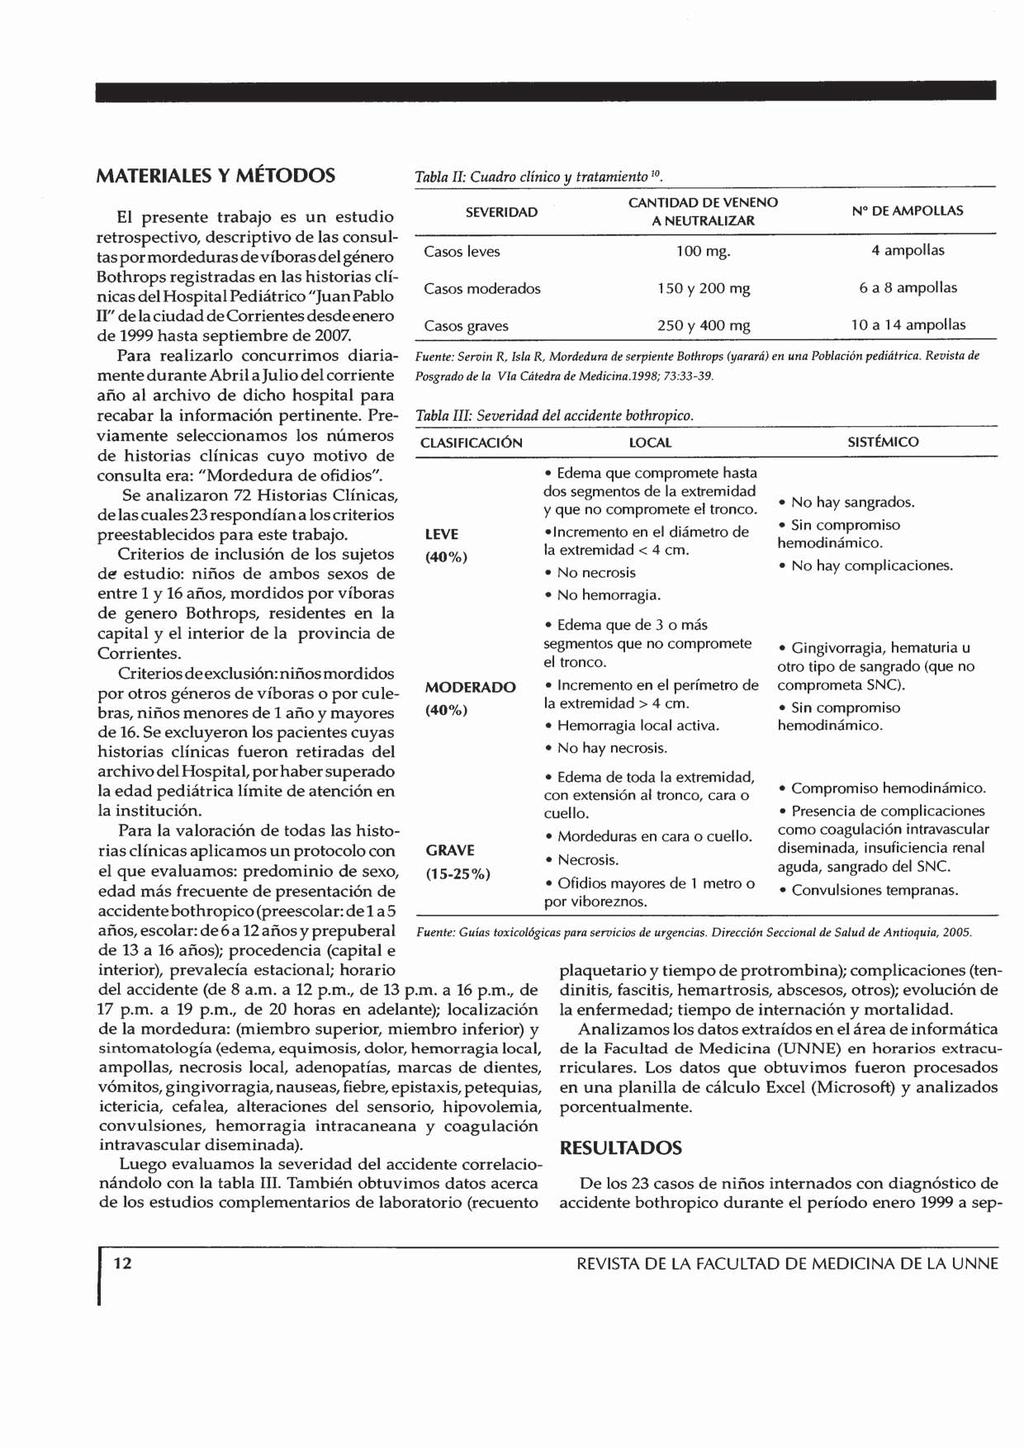 MATERIALES Y METODOS El presente trabajo es un estudio retrospectivo, descriptivo de las consultas por mordeduras de víboras del género Bothrops registradas en las historias clínicas del Hospital